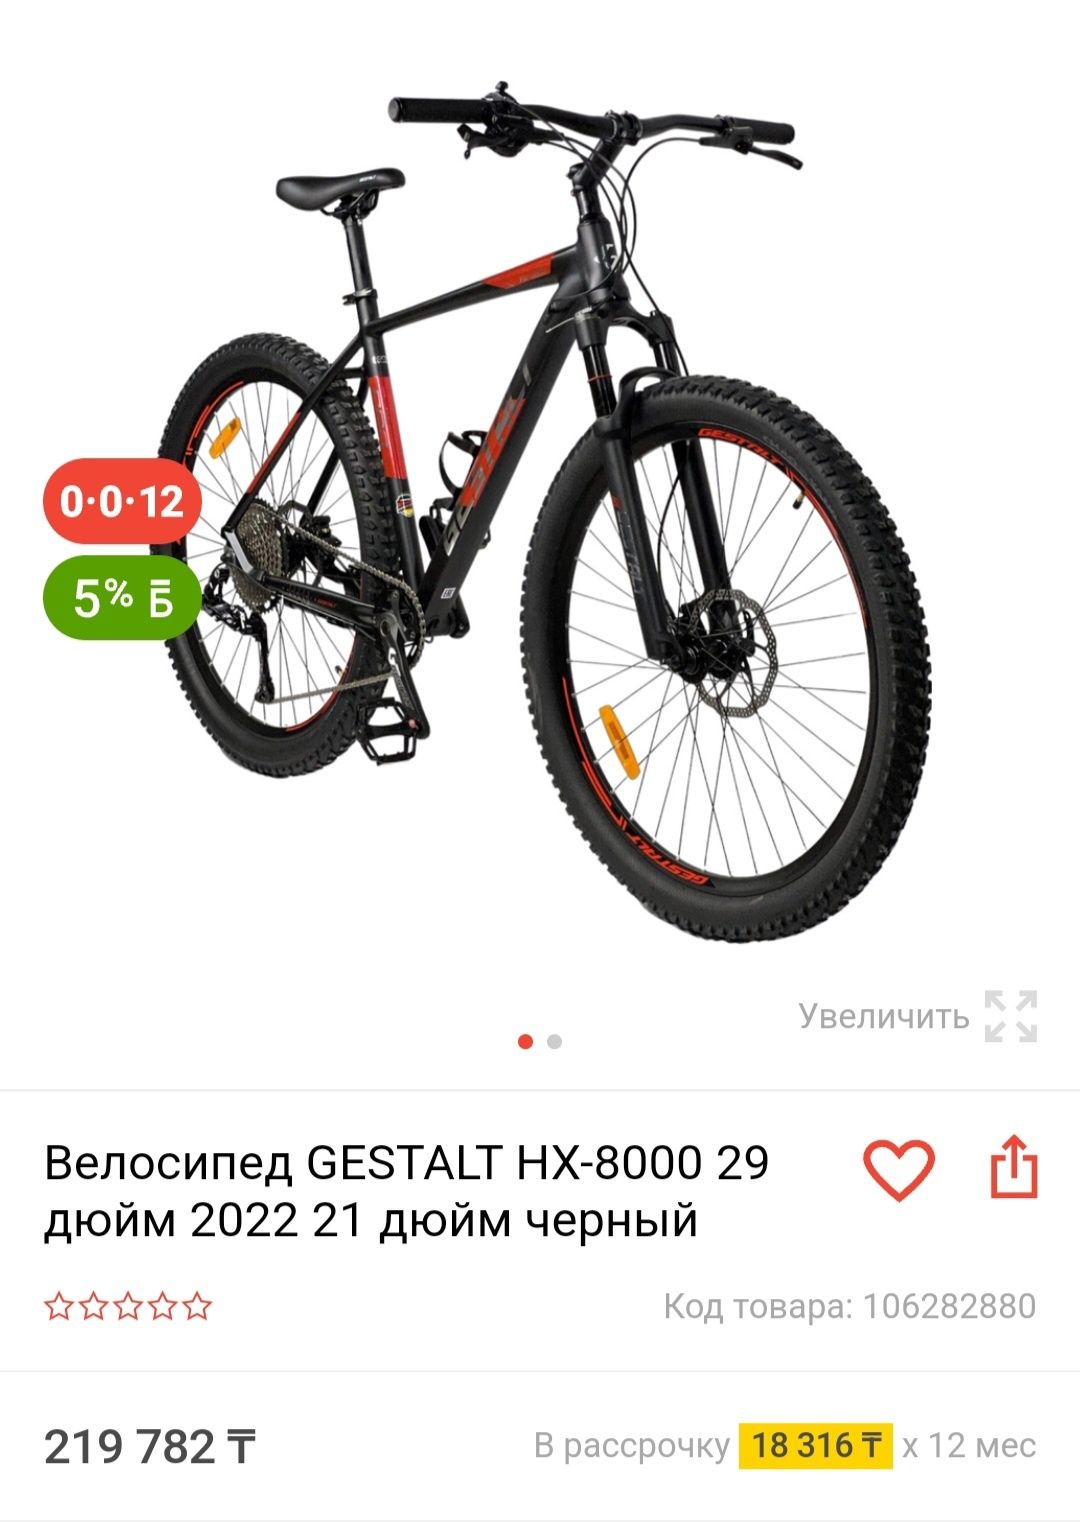 Распродажа новых скоростных велосипедов по низким ценам(Рассрочка/Кред